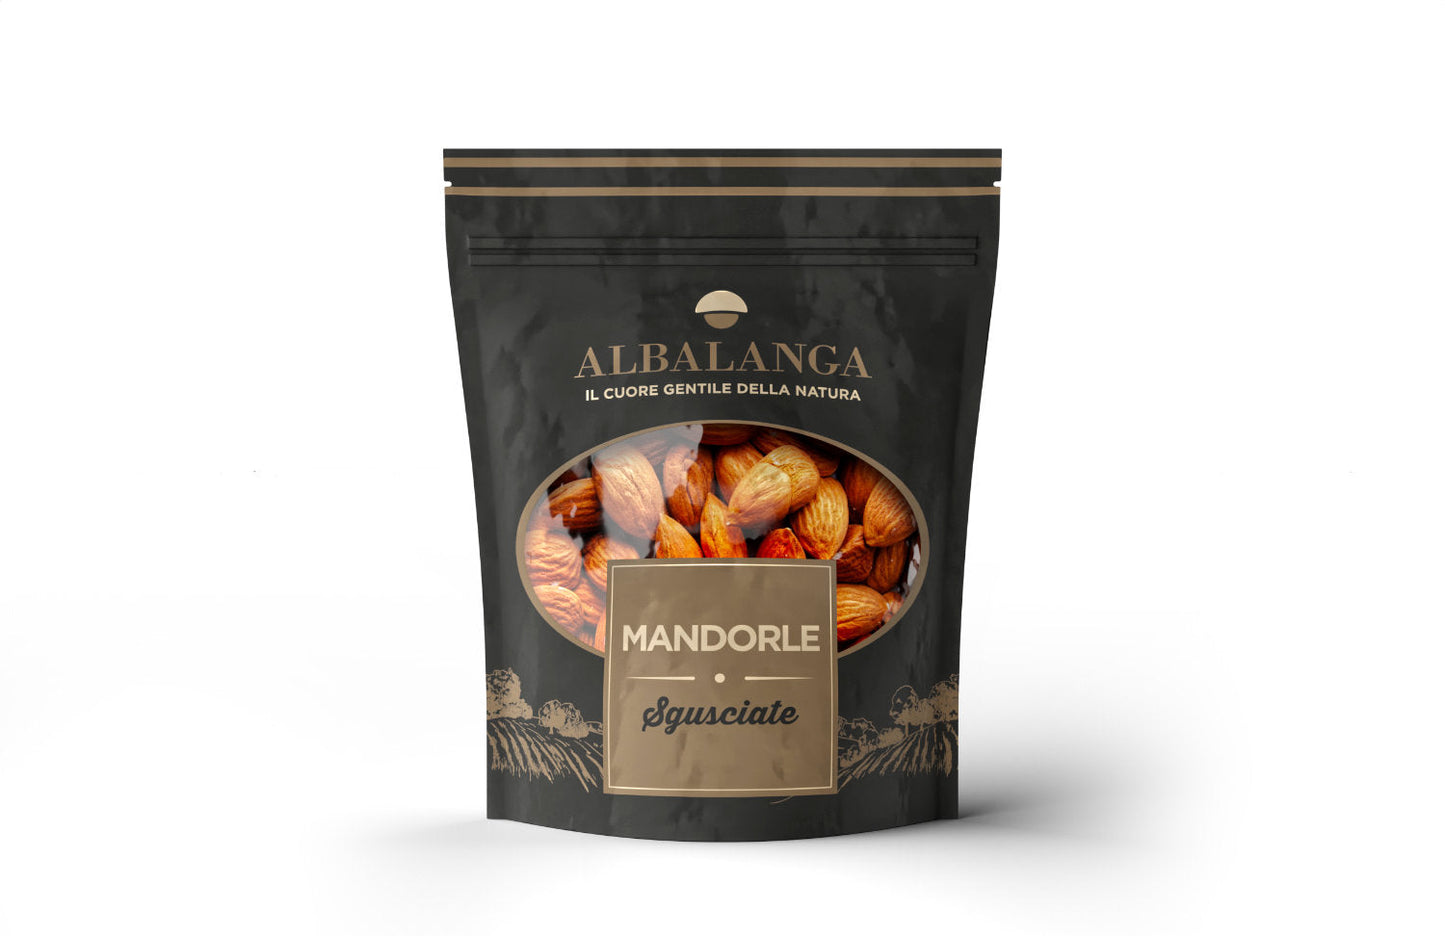 ALBALANGA - Frutta Secca in Sacchetto - I migliori prodotti Made in Italy da Fiera di Monza Shop - Solo 2.50€! Acquista subito su Fiera di Monza Shop!